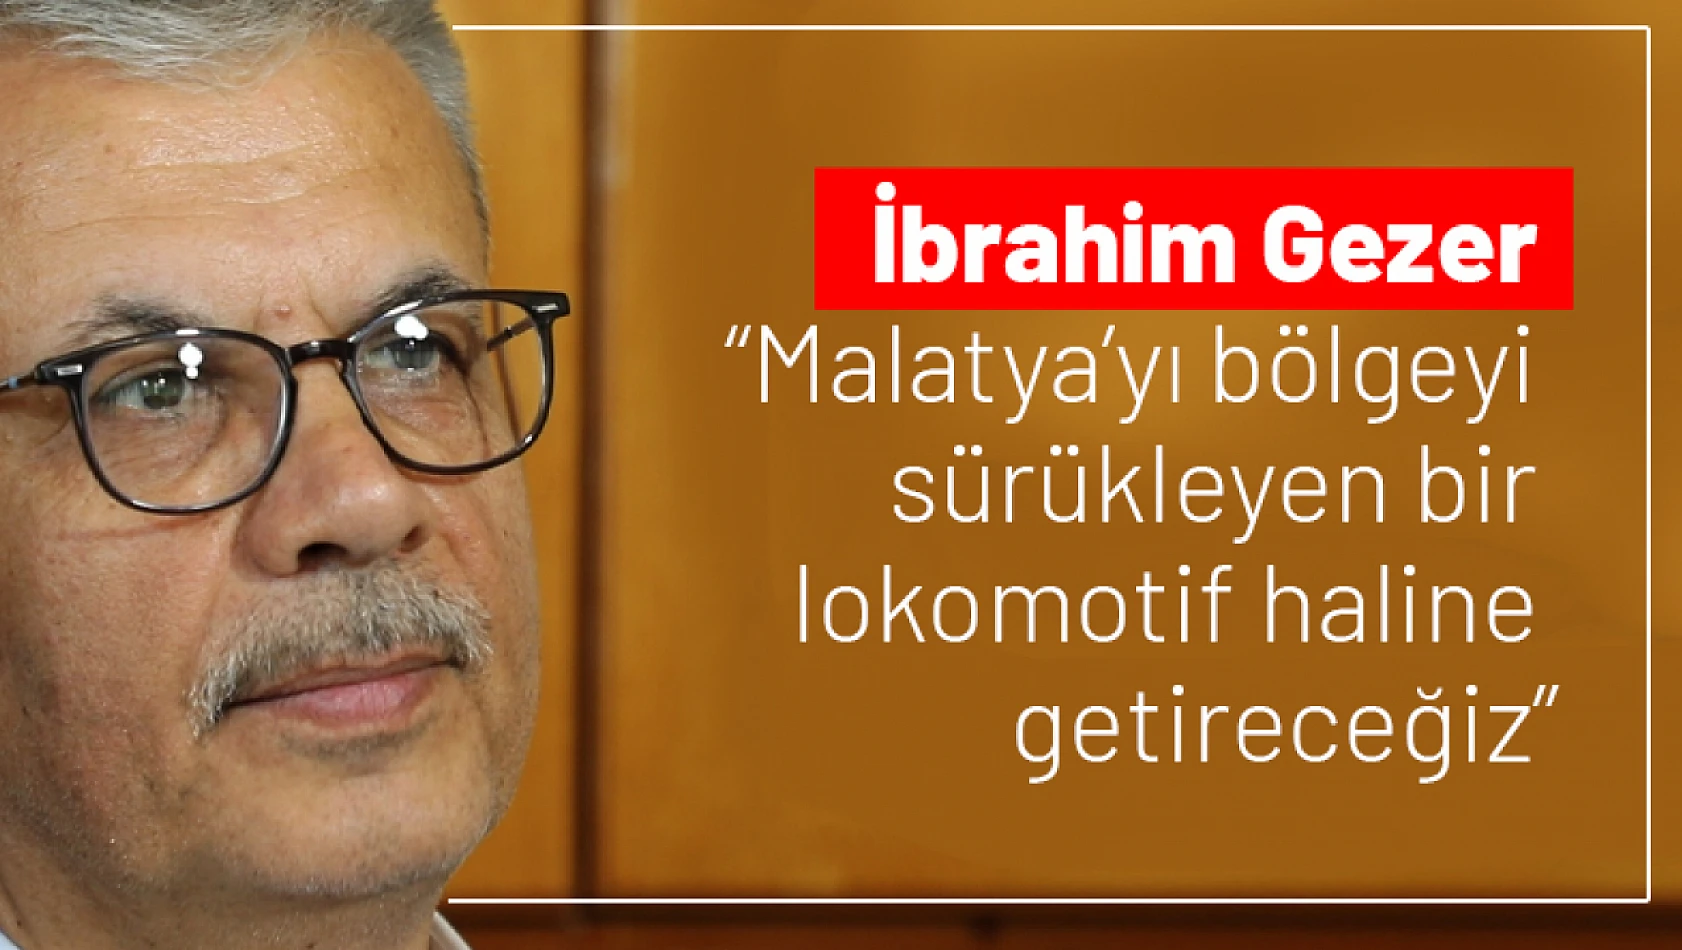 Gezer: Malatya'yı bölgeyi sürükleyen bir lokomotif haline getireceğiz